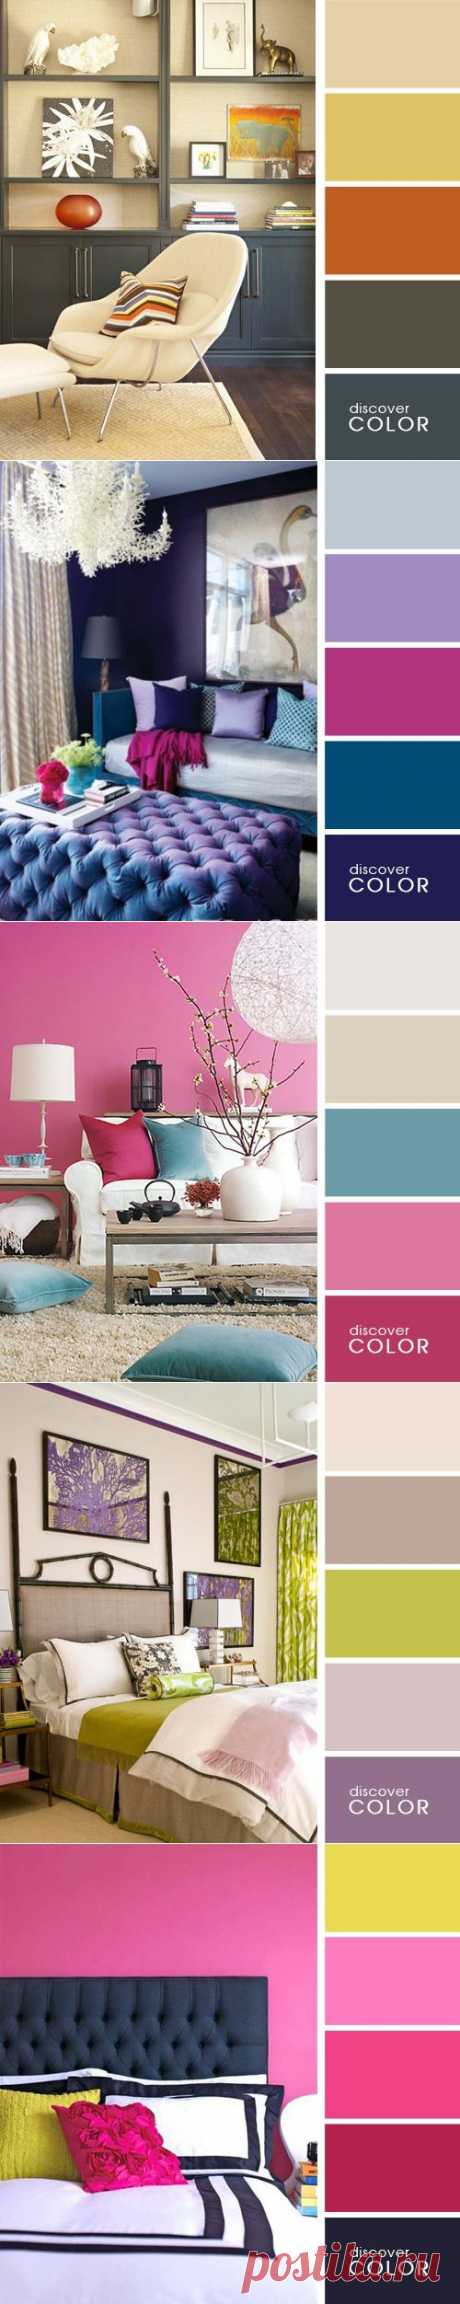 20 идеальных сочетаний цветов для дизайна интерьера | Мамам, женщинам, бабушкам и очень любознательным.